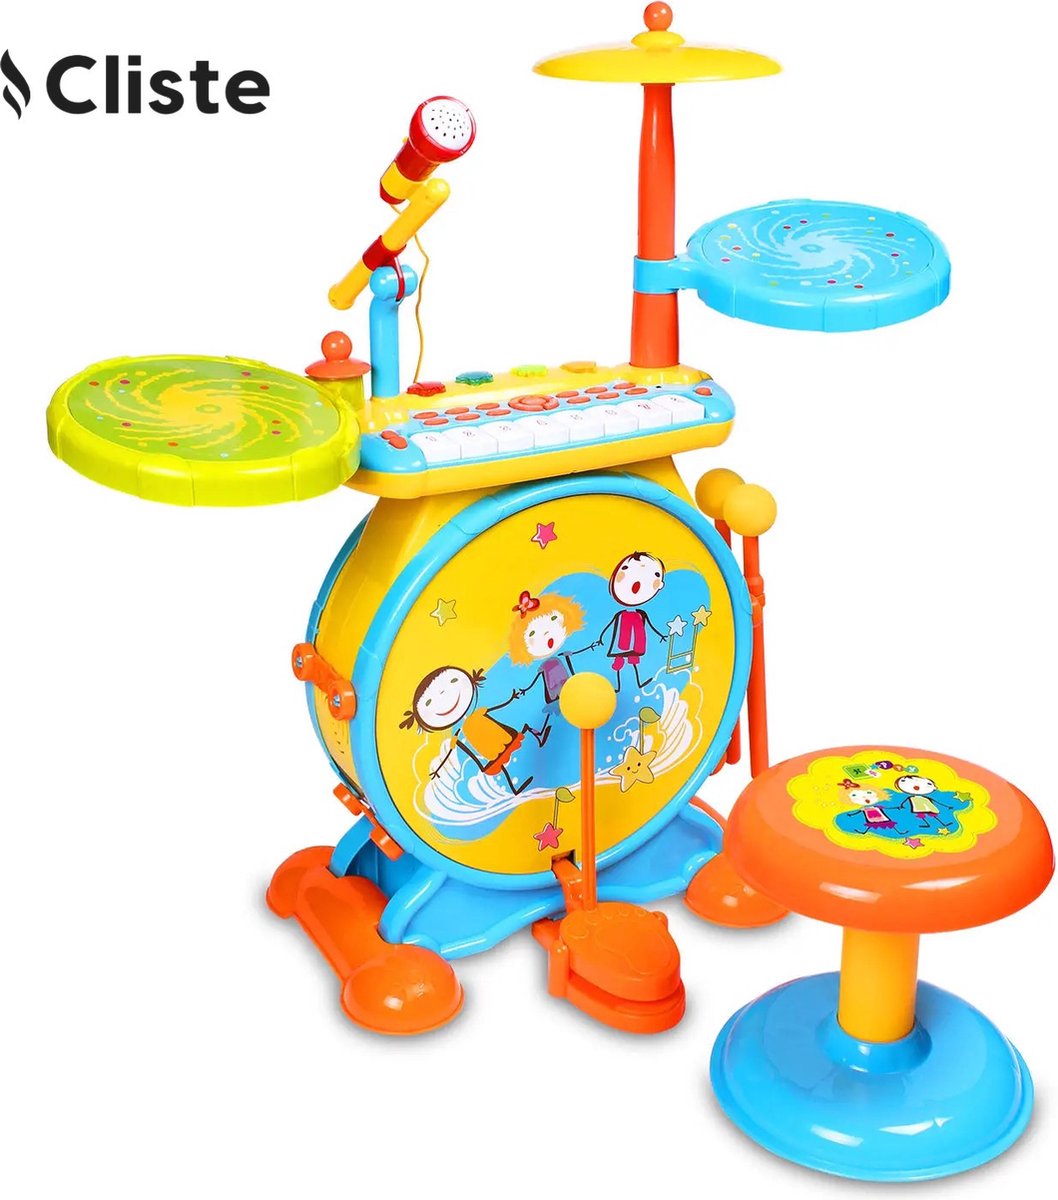 Cliste Elektronische Drumkit voor kinderen - Realistisch drumgeluid - 8-toetsen toetsenbord - Mp3-stekker - Inclusief stoel - Blauw/Geel - Educatief Babyspeelgoed - Geluid en Spelletjes